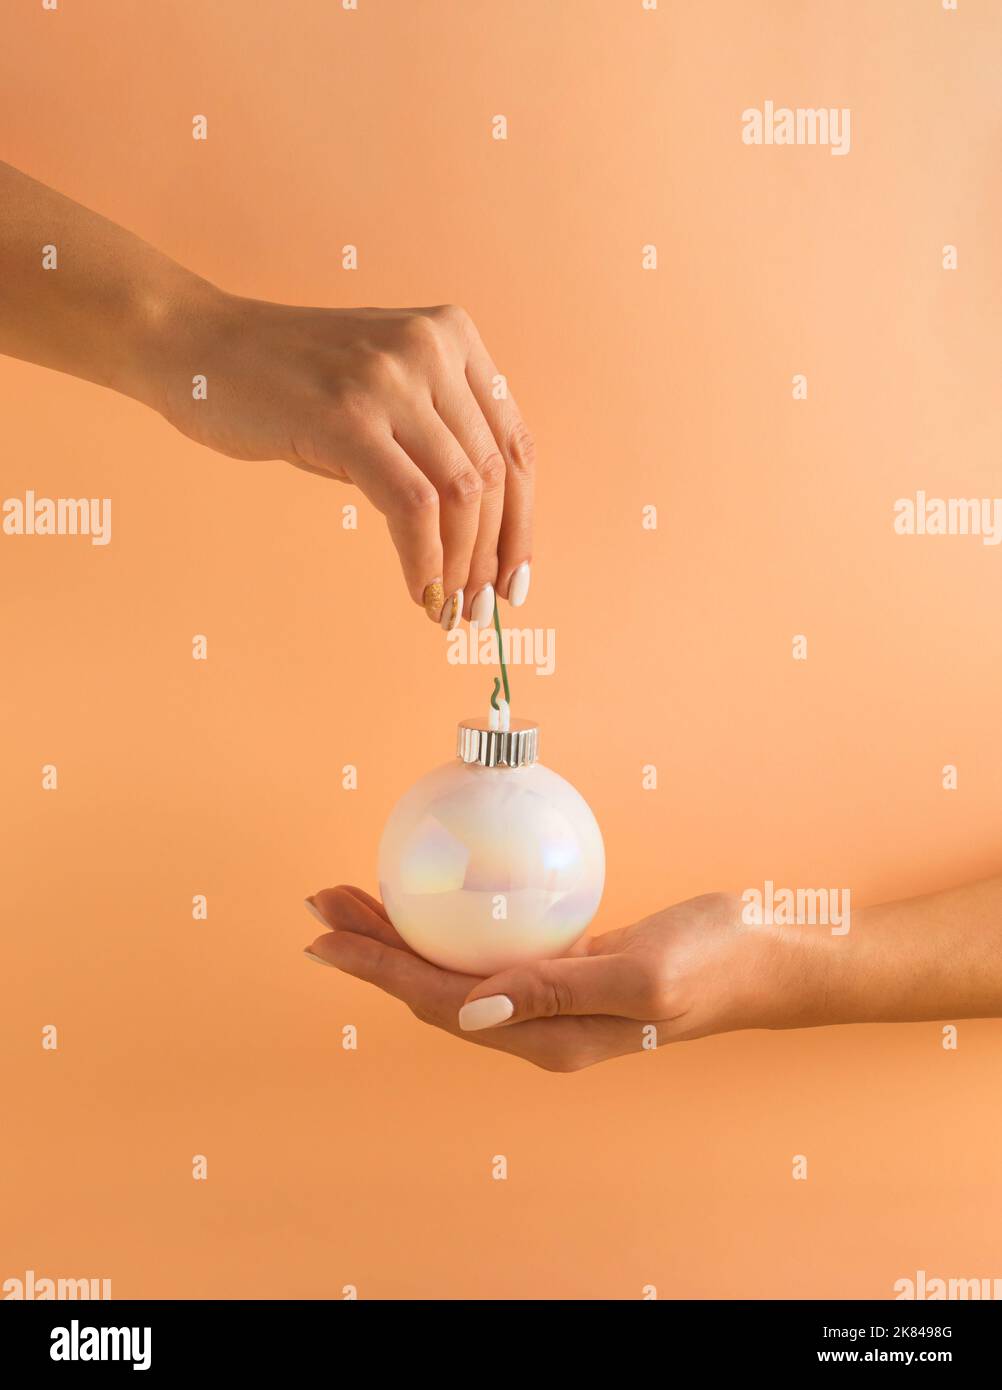 Mains de femme tenant blanc brillant boule de Noël sur fond orange pastel. Concept de vacances minimal. Bonne Année. Banque D'Images